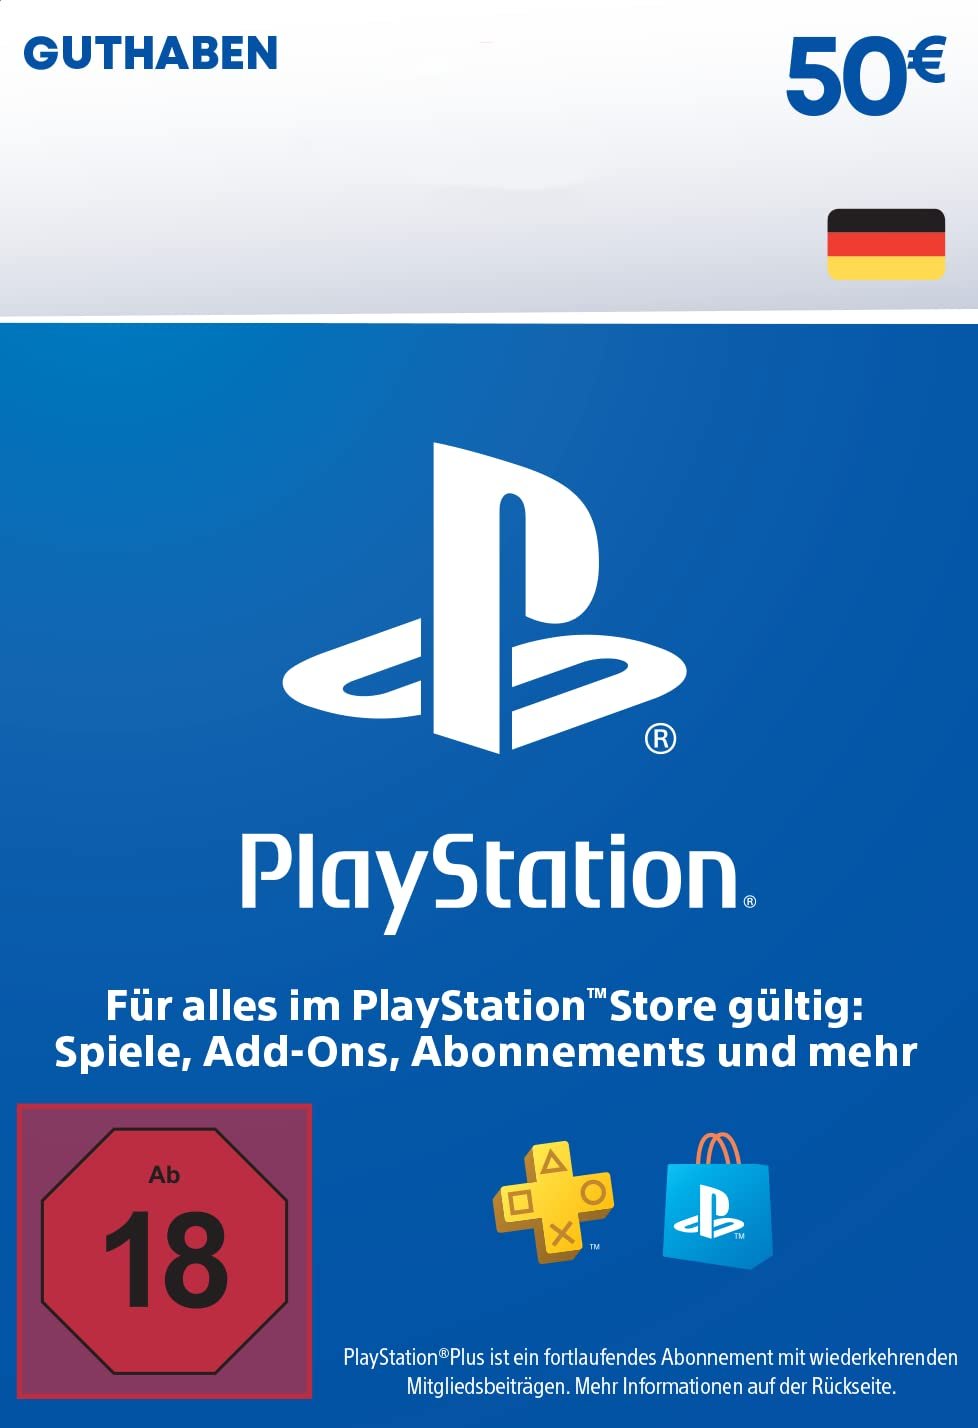 50 euros PlayStation Store credit (PSN)